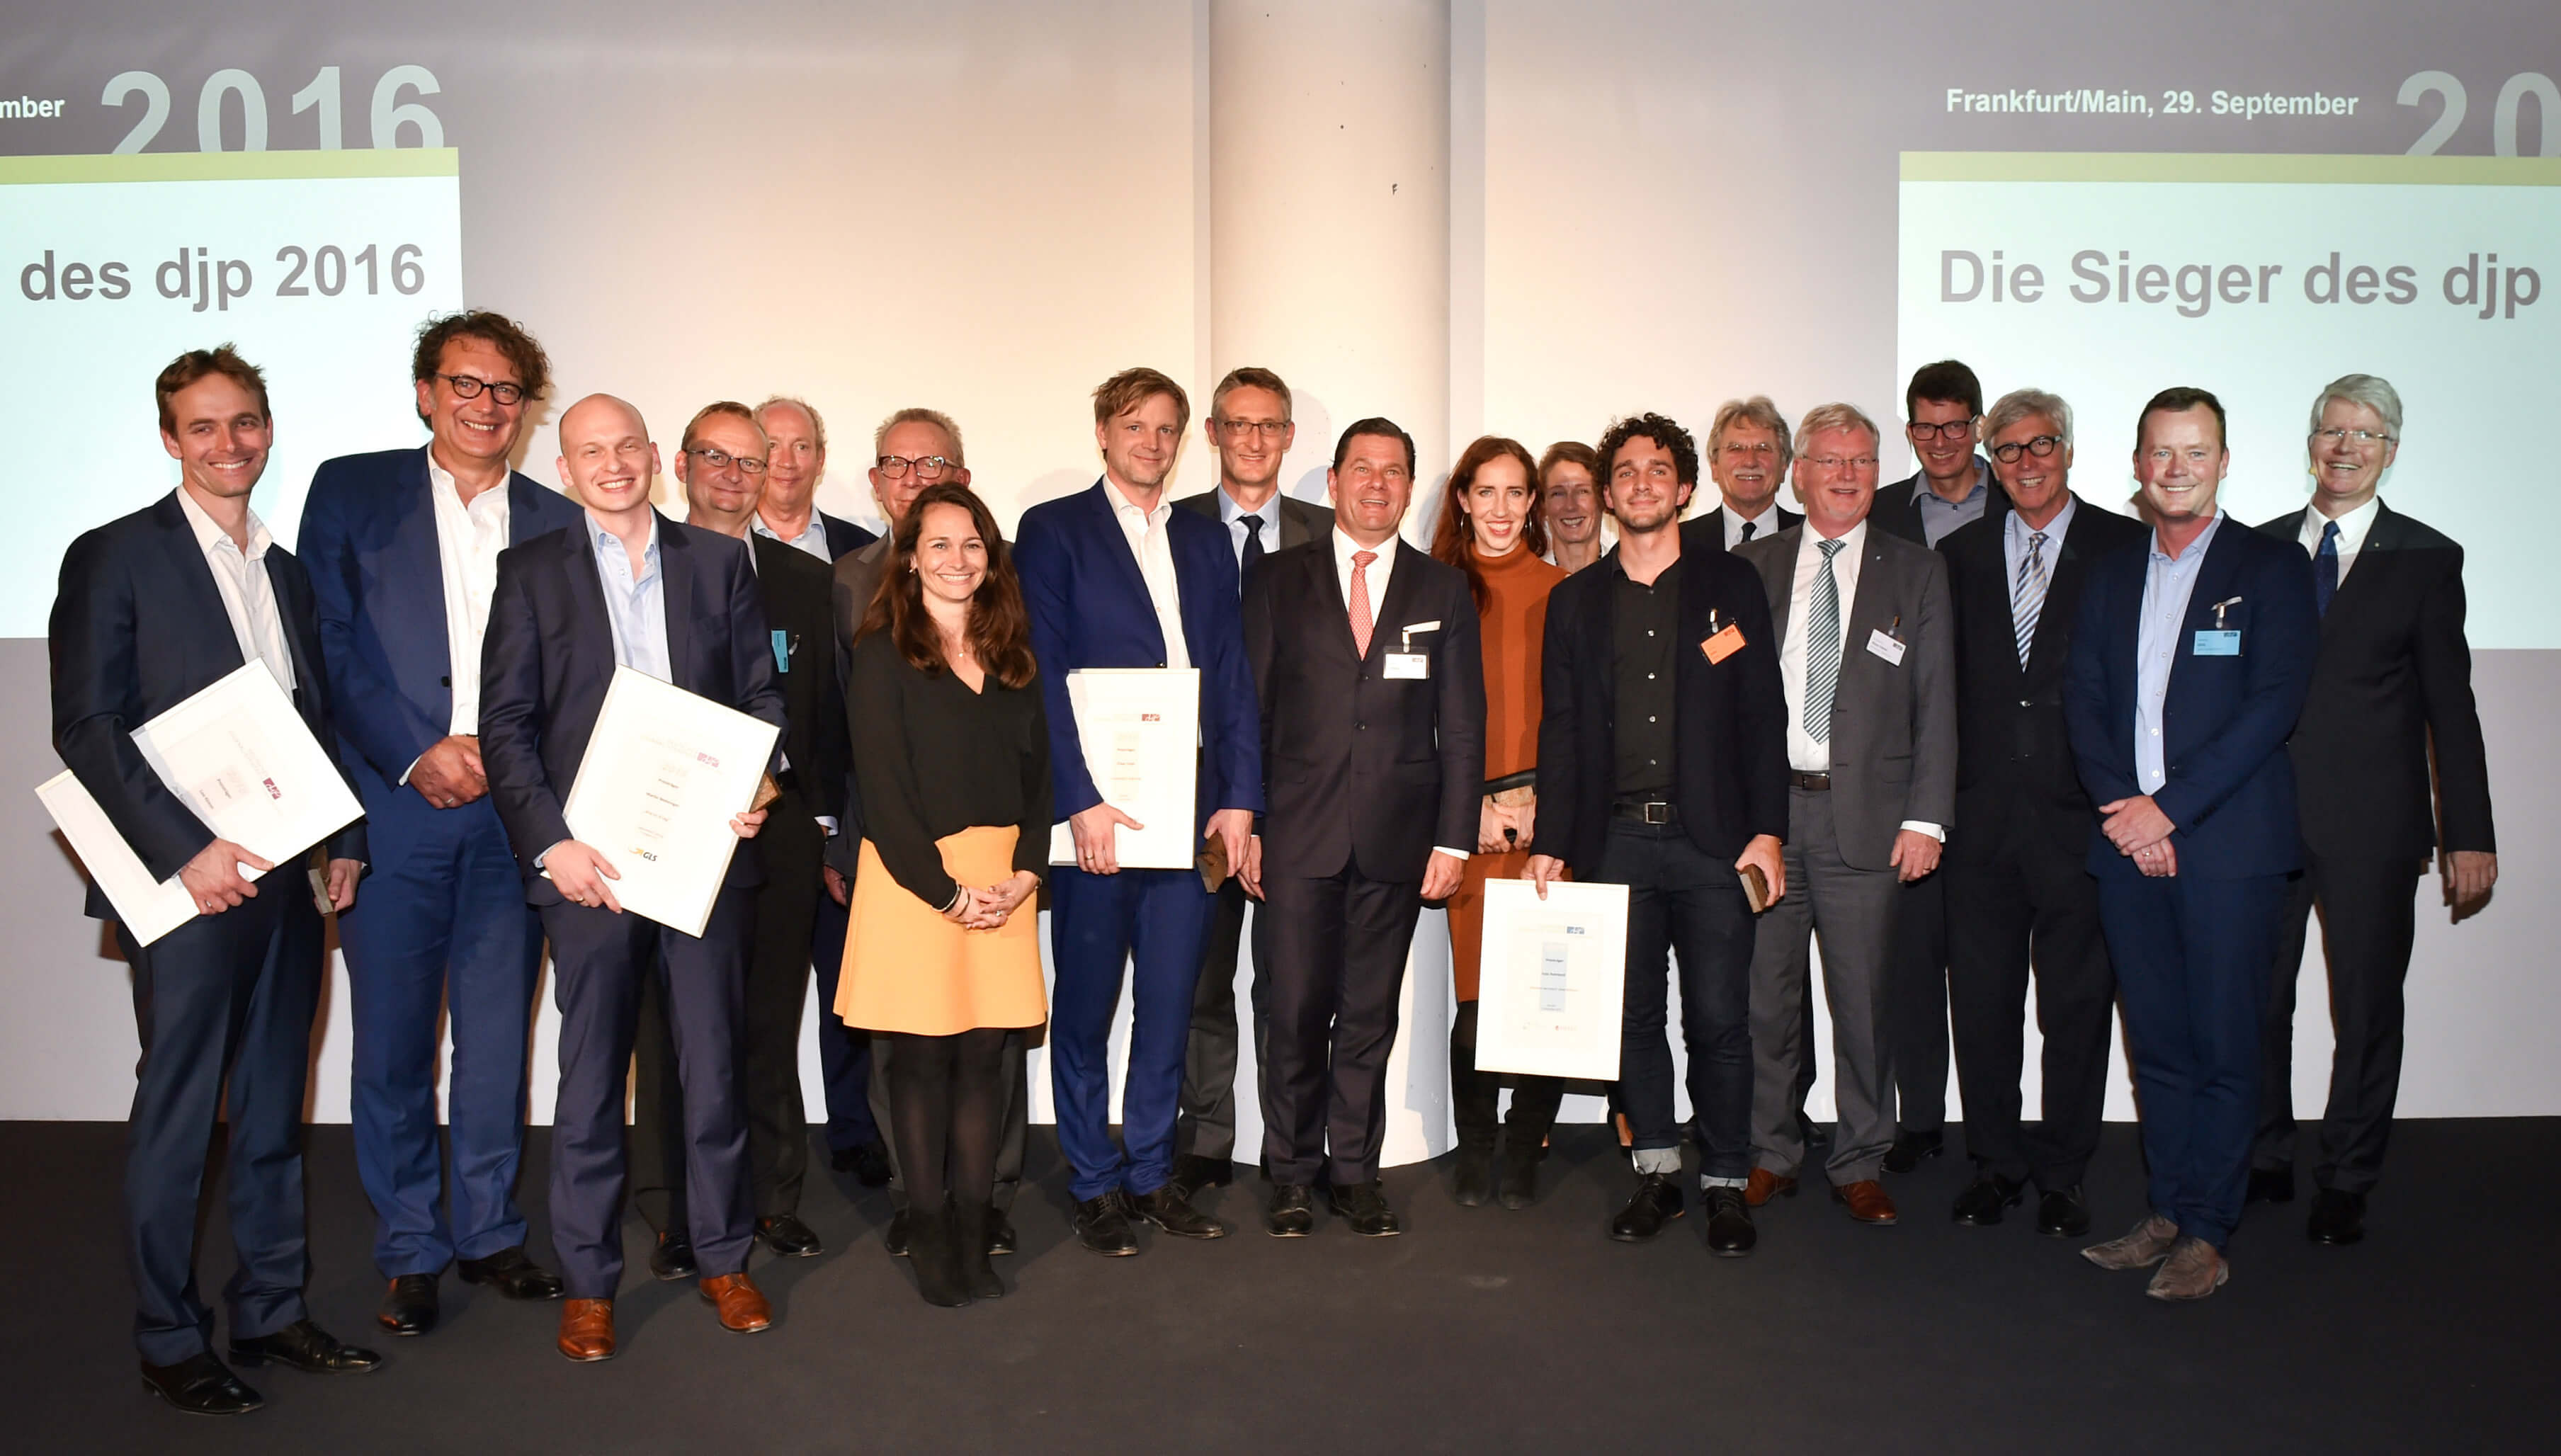 Preisträger, Juroren und Partner des djp 2016